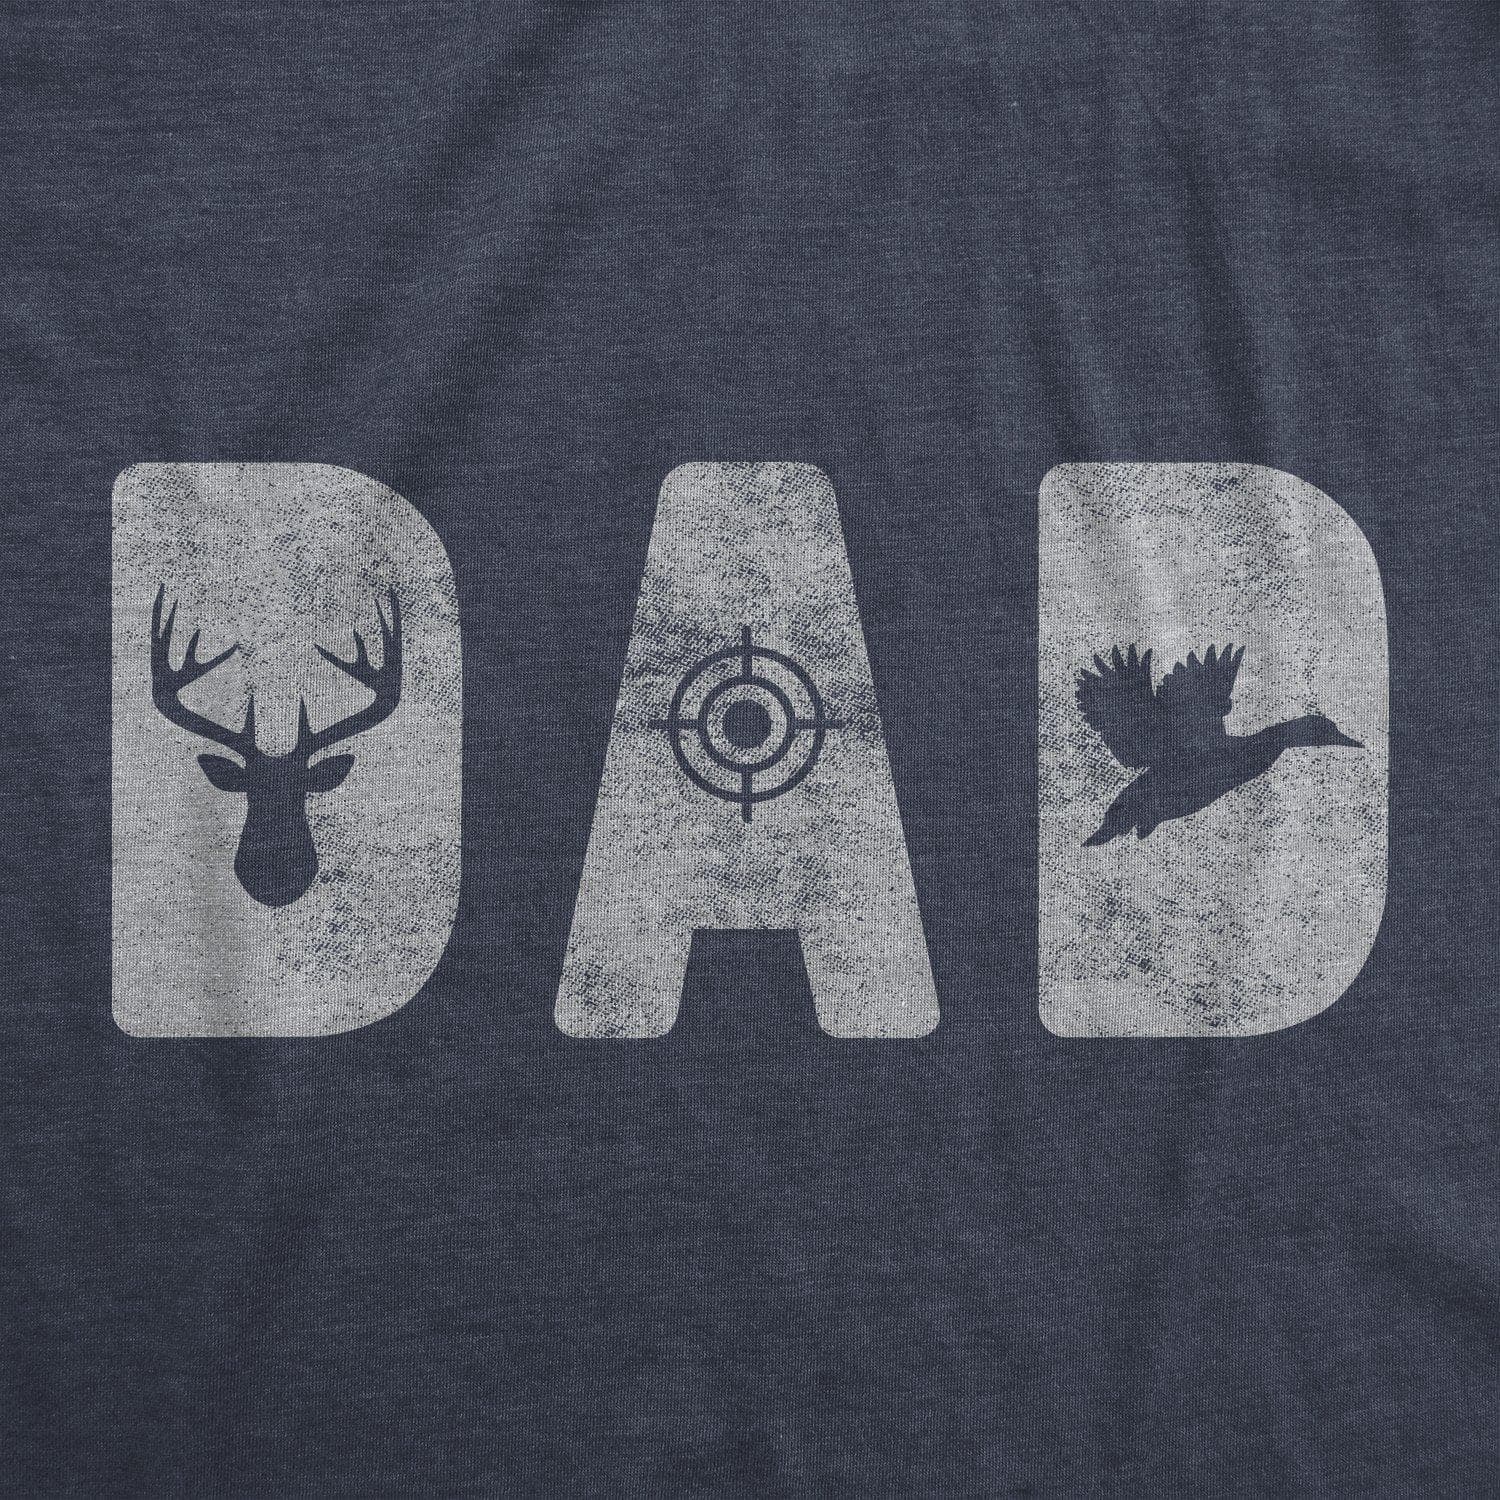 Hunting Shirt, Deer Camp Shirt, Deer Hunting Shirt, Funny Hunting Shirt,  Hunting T-shirt 